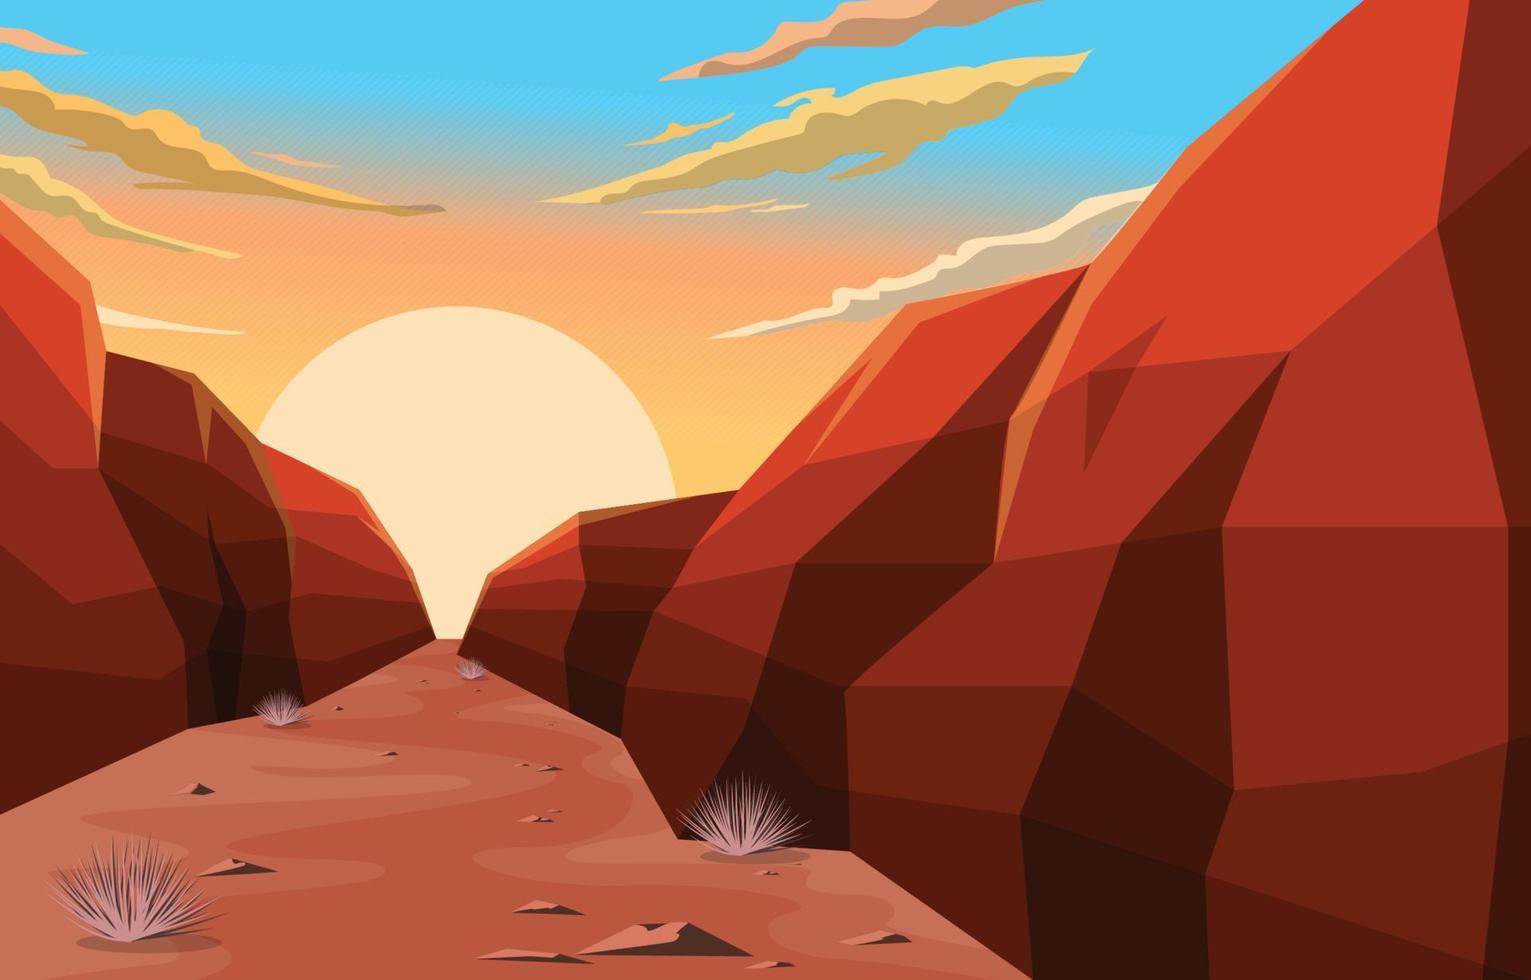 nascer do sol na ilustração da paisagem do deserto do penhasco da rocha da américa ocidental vetor